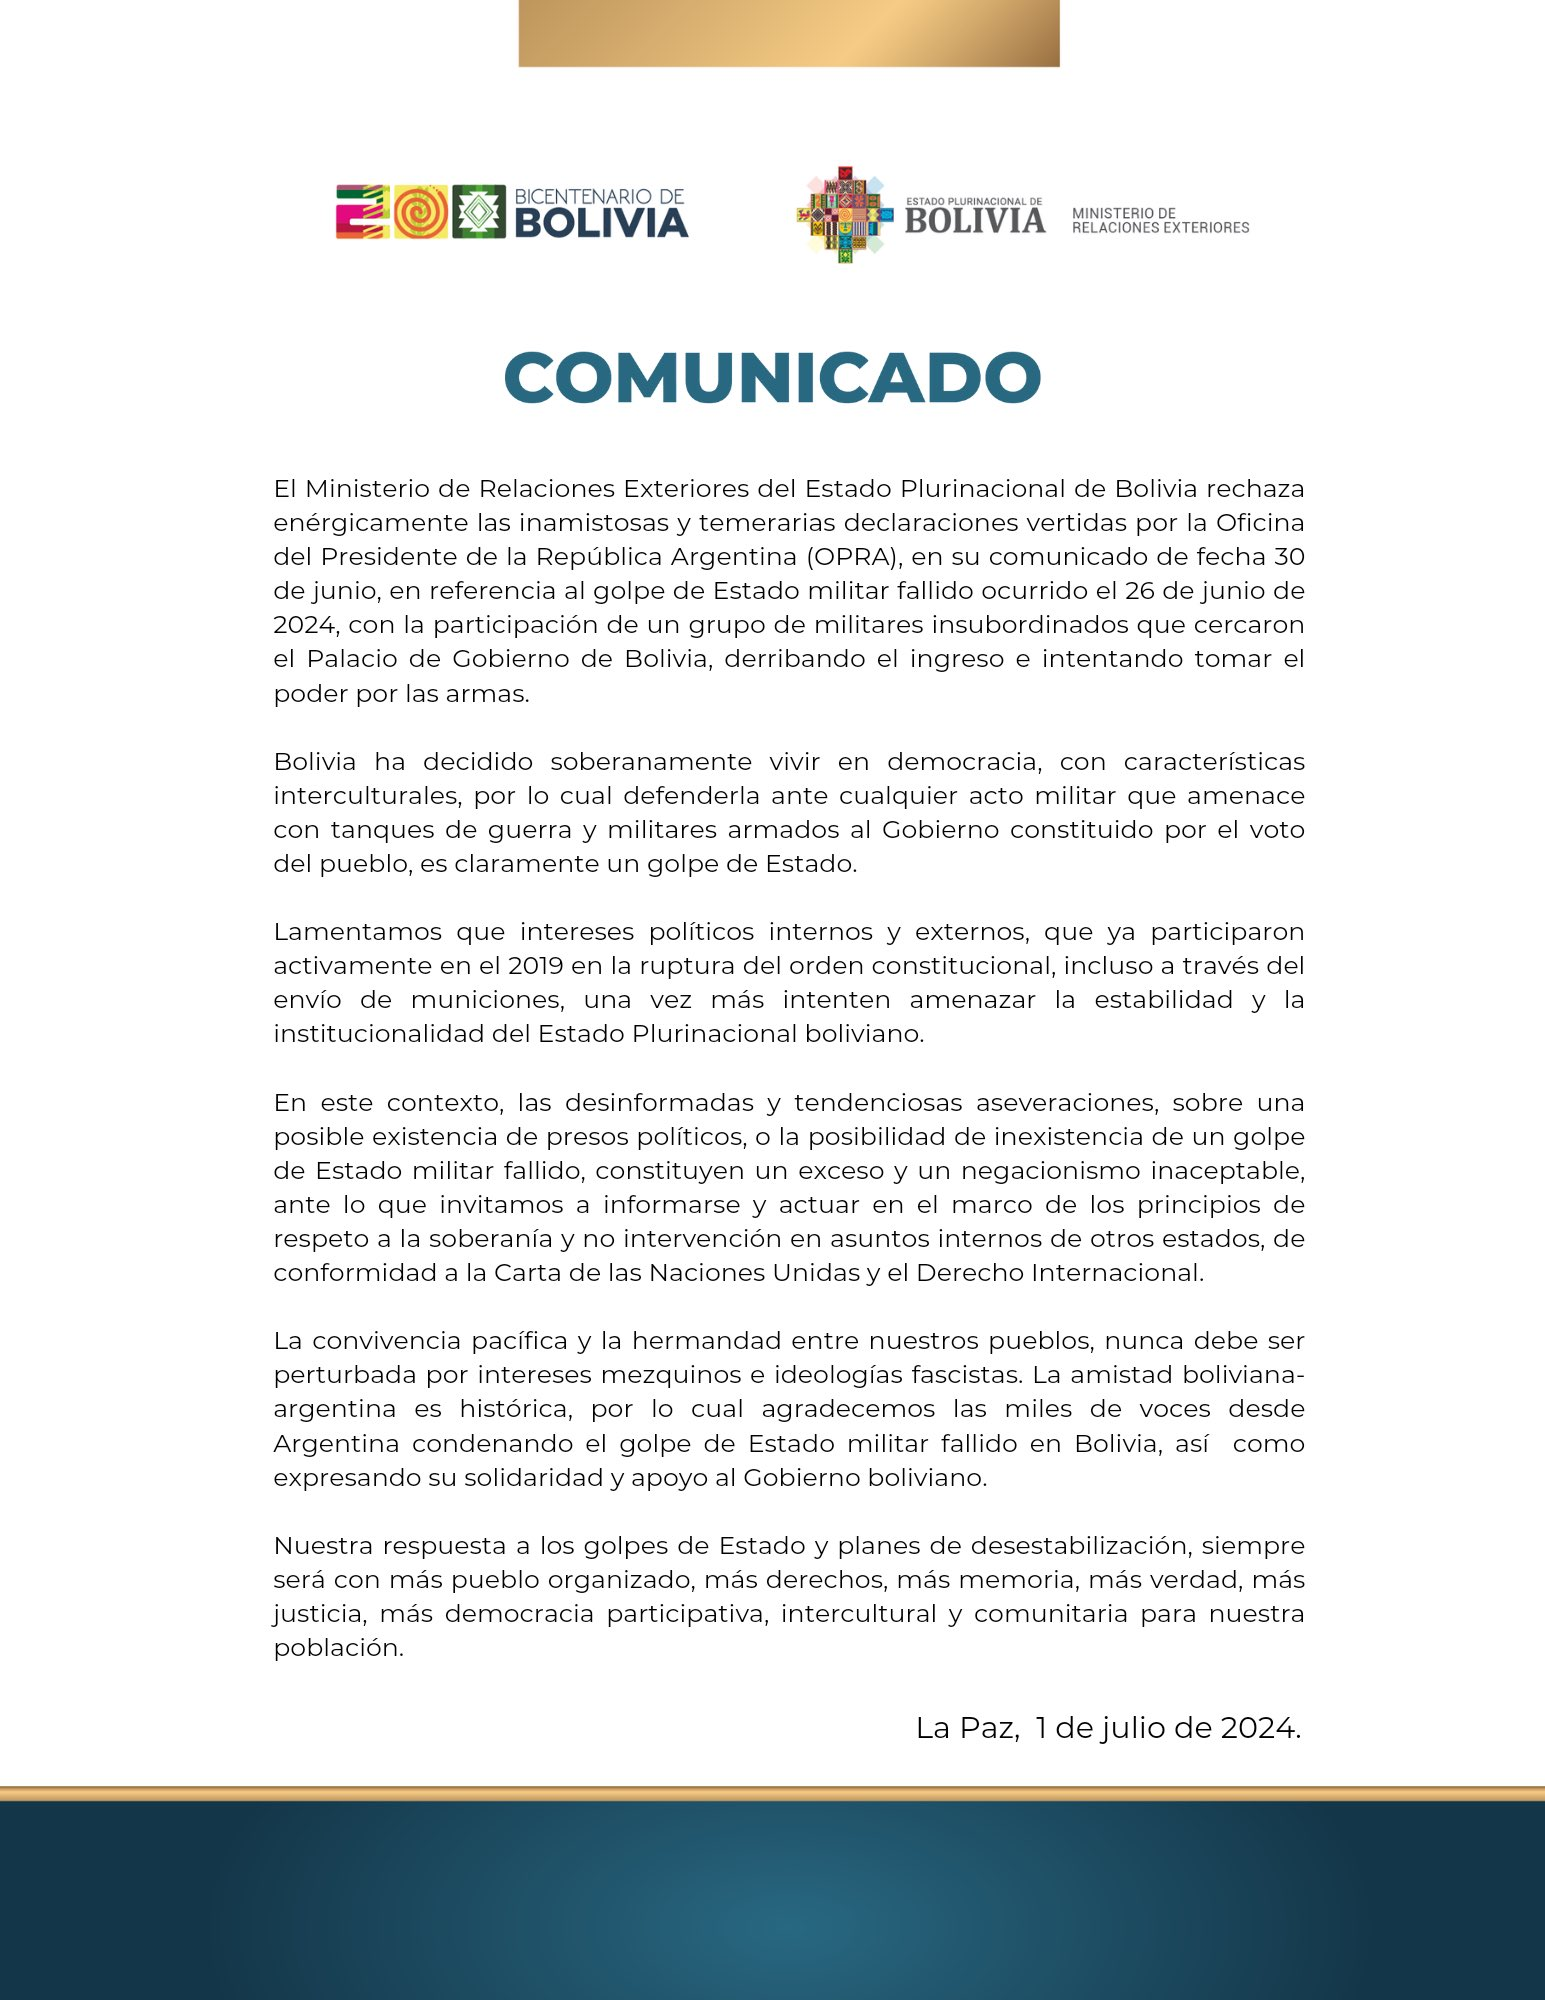 Bolivia retiró a su embajador en Buenos Aires • Canal C